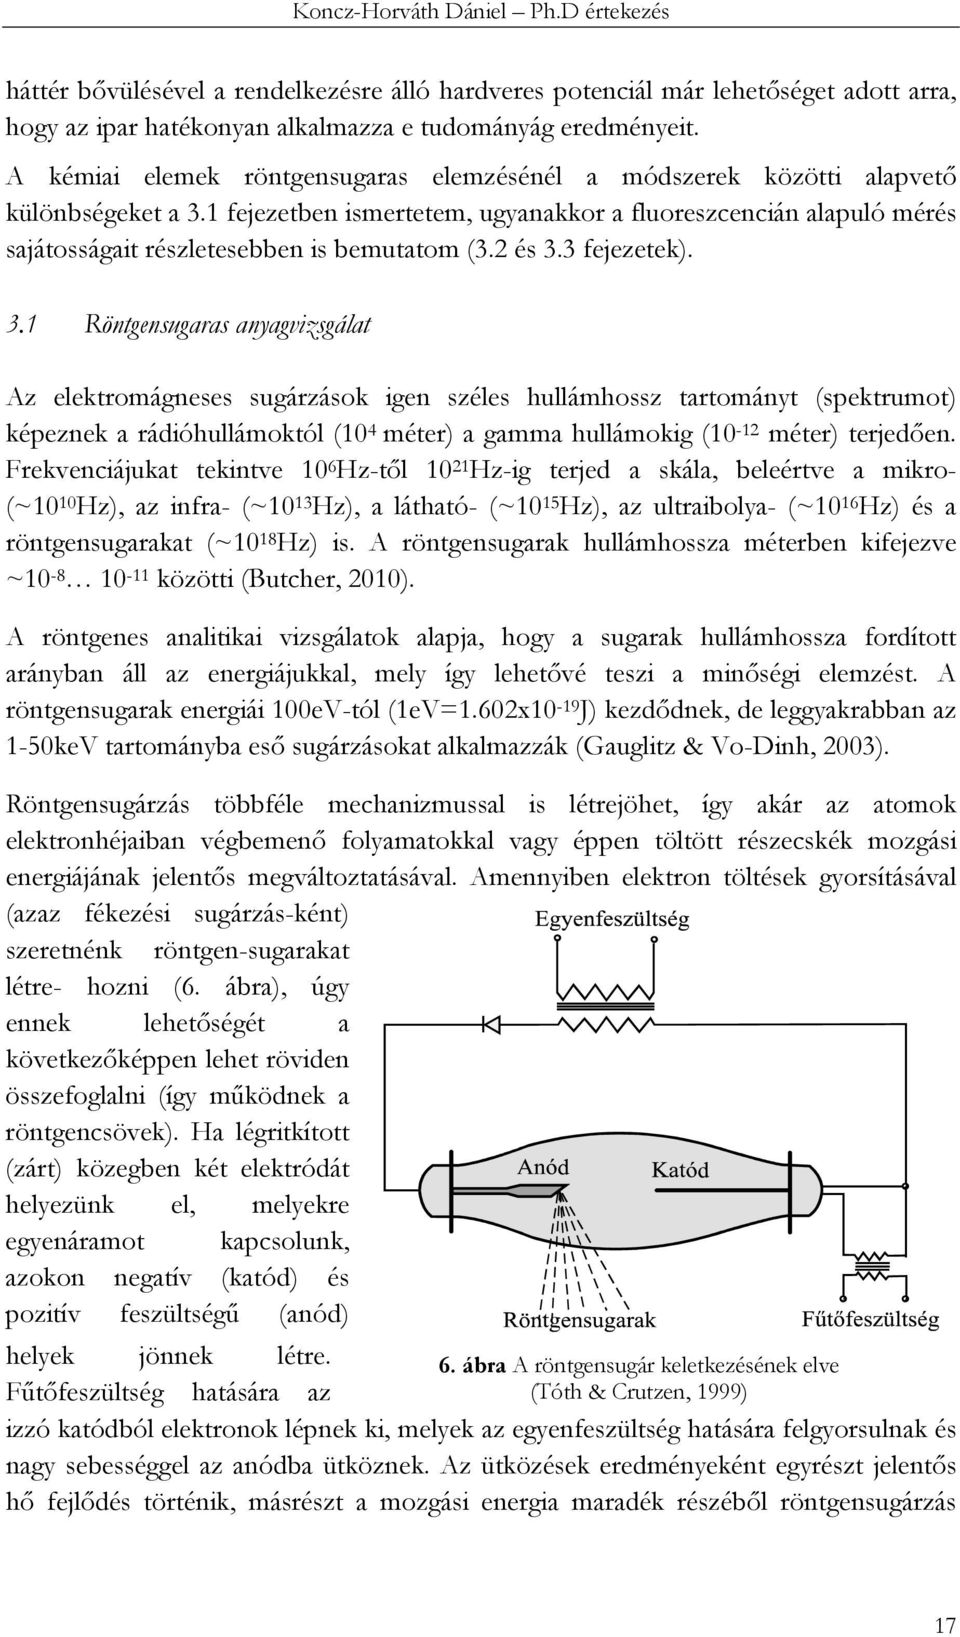 1 fejezetben ismertetem, ugyanakkor a fluoreszcencián alapuló mérés sajátosságait részletesebben is bemutatom (3.2 és 3.